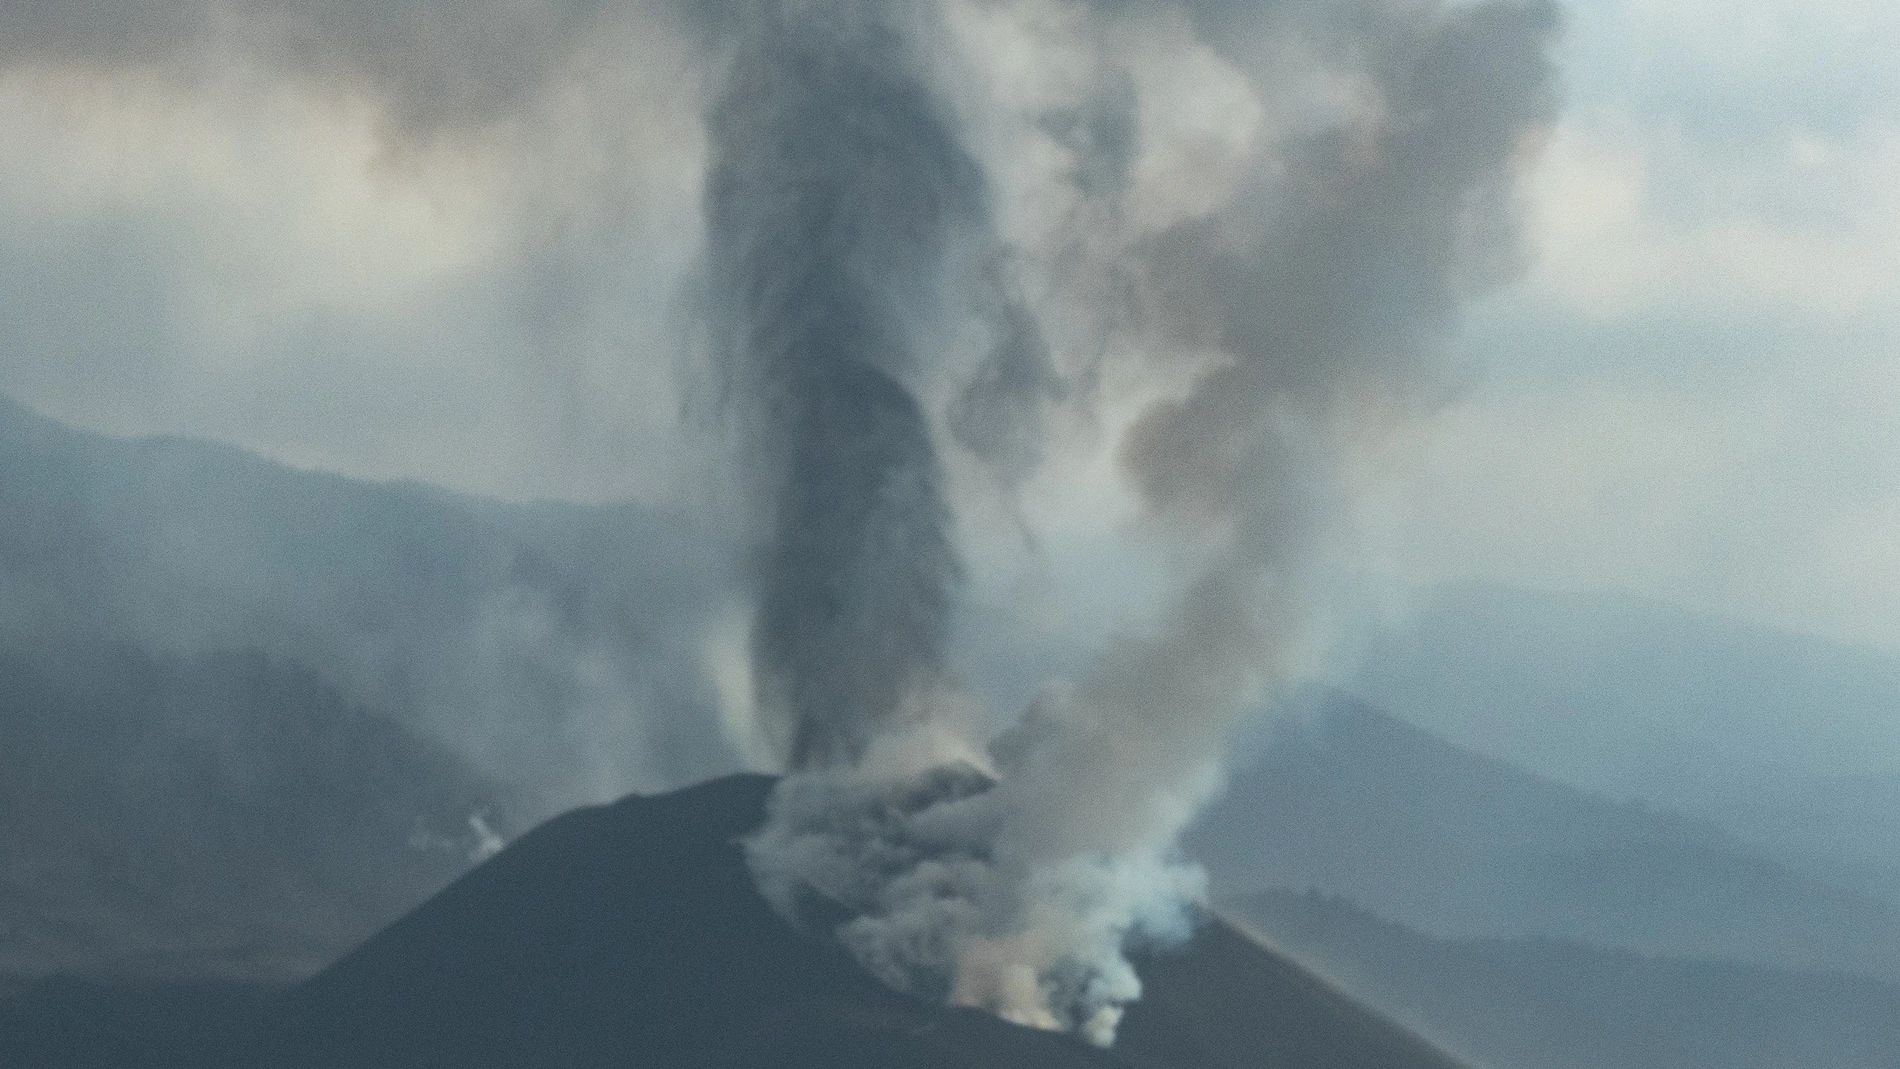 La intensa ceniza emitida por el volcán de Cumbre Vieja ha obligado a extremar las precauciones por la mala calidad del aire en toda la zona oeste de la isla de La Palma